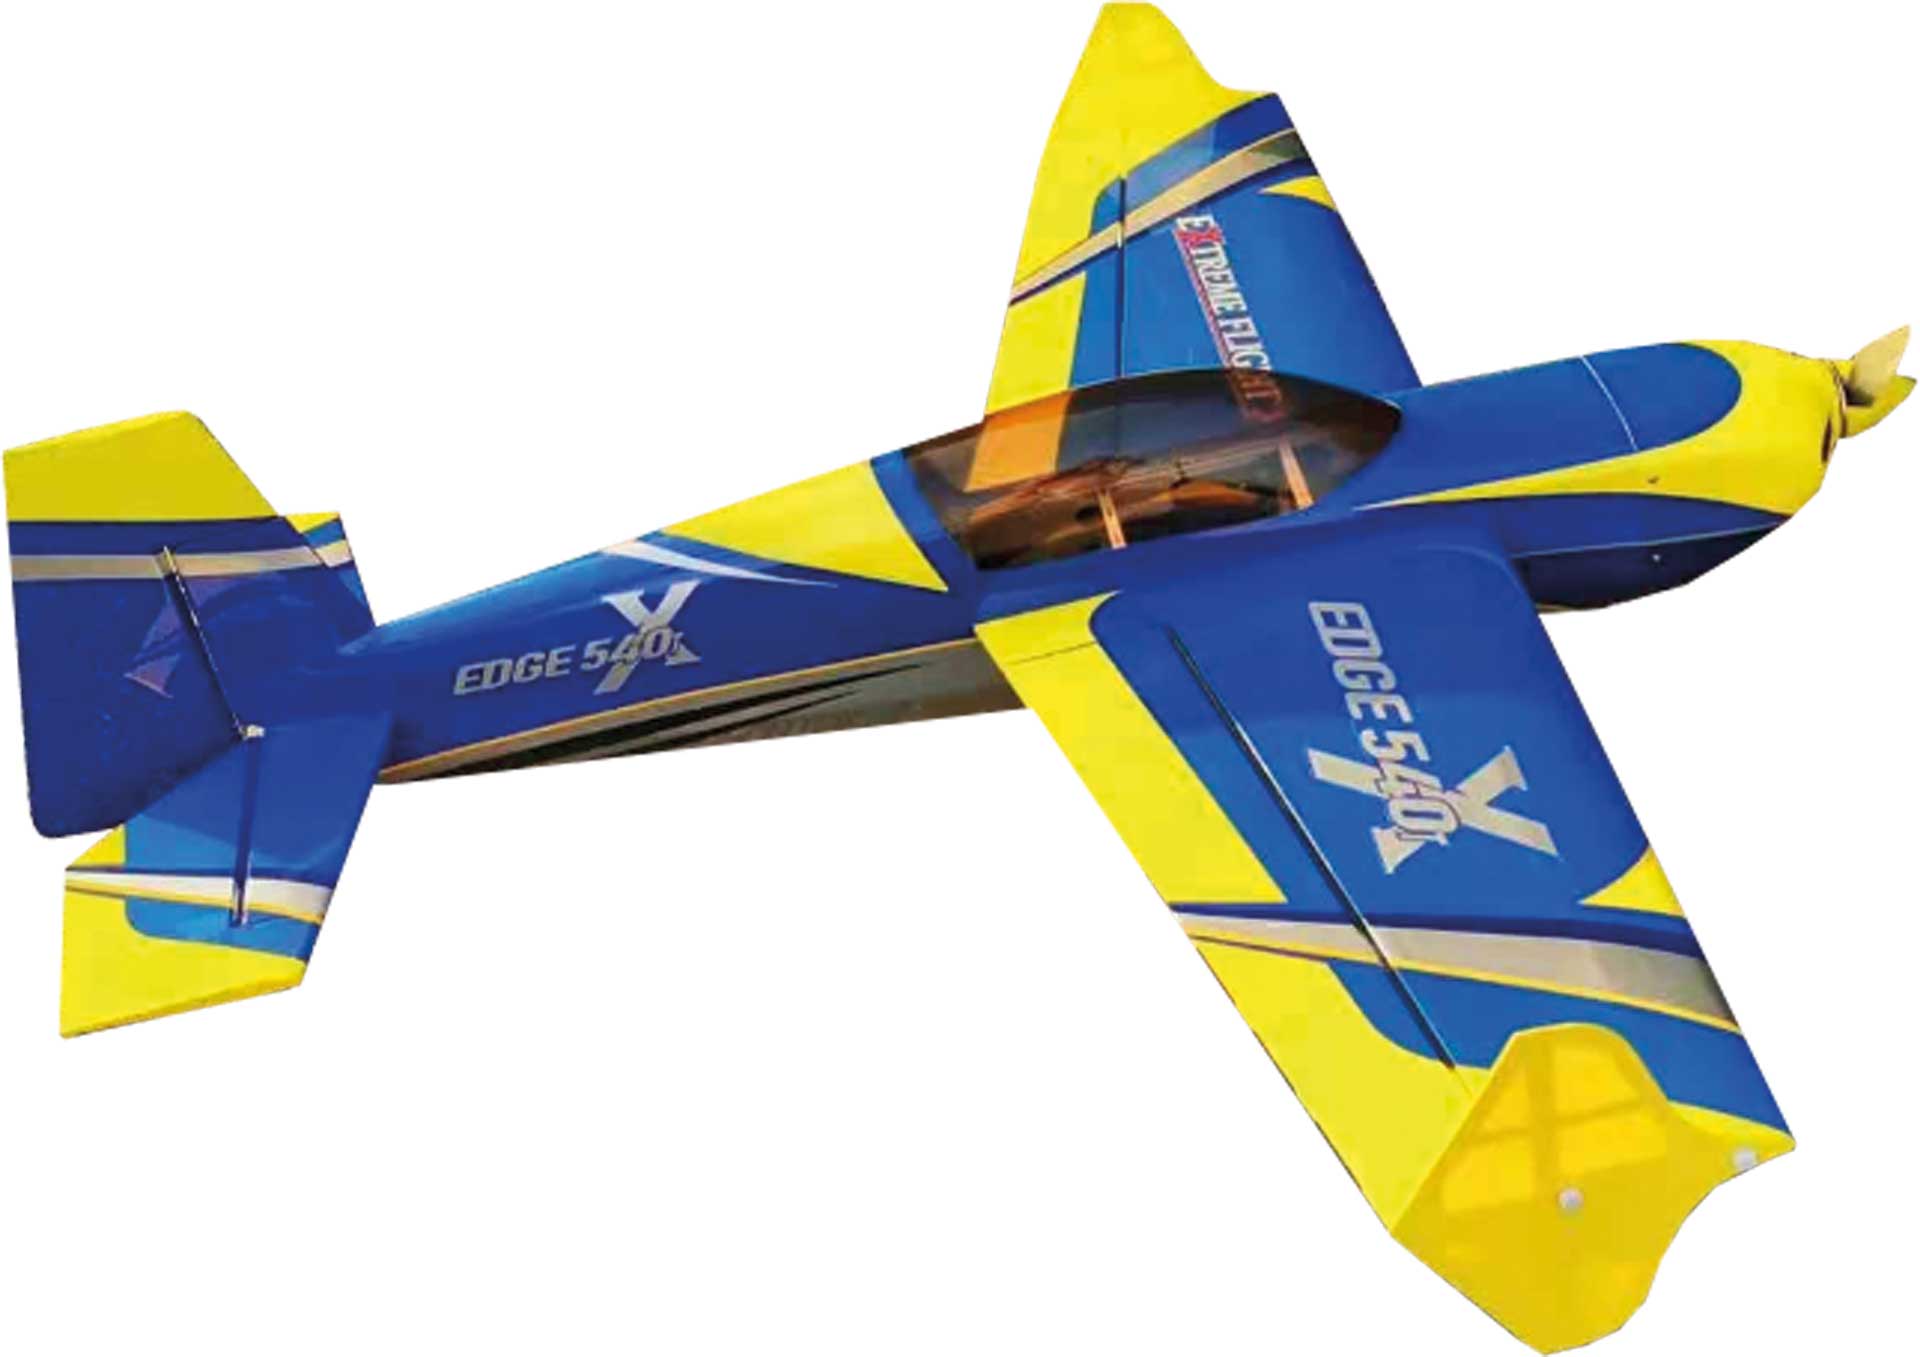 EXTREMEFLIGHT-RC Edge 540 48" V2 Plus bleu/jaune ARF avec fermeture rapide des ailes